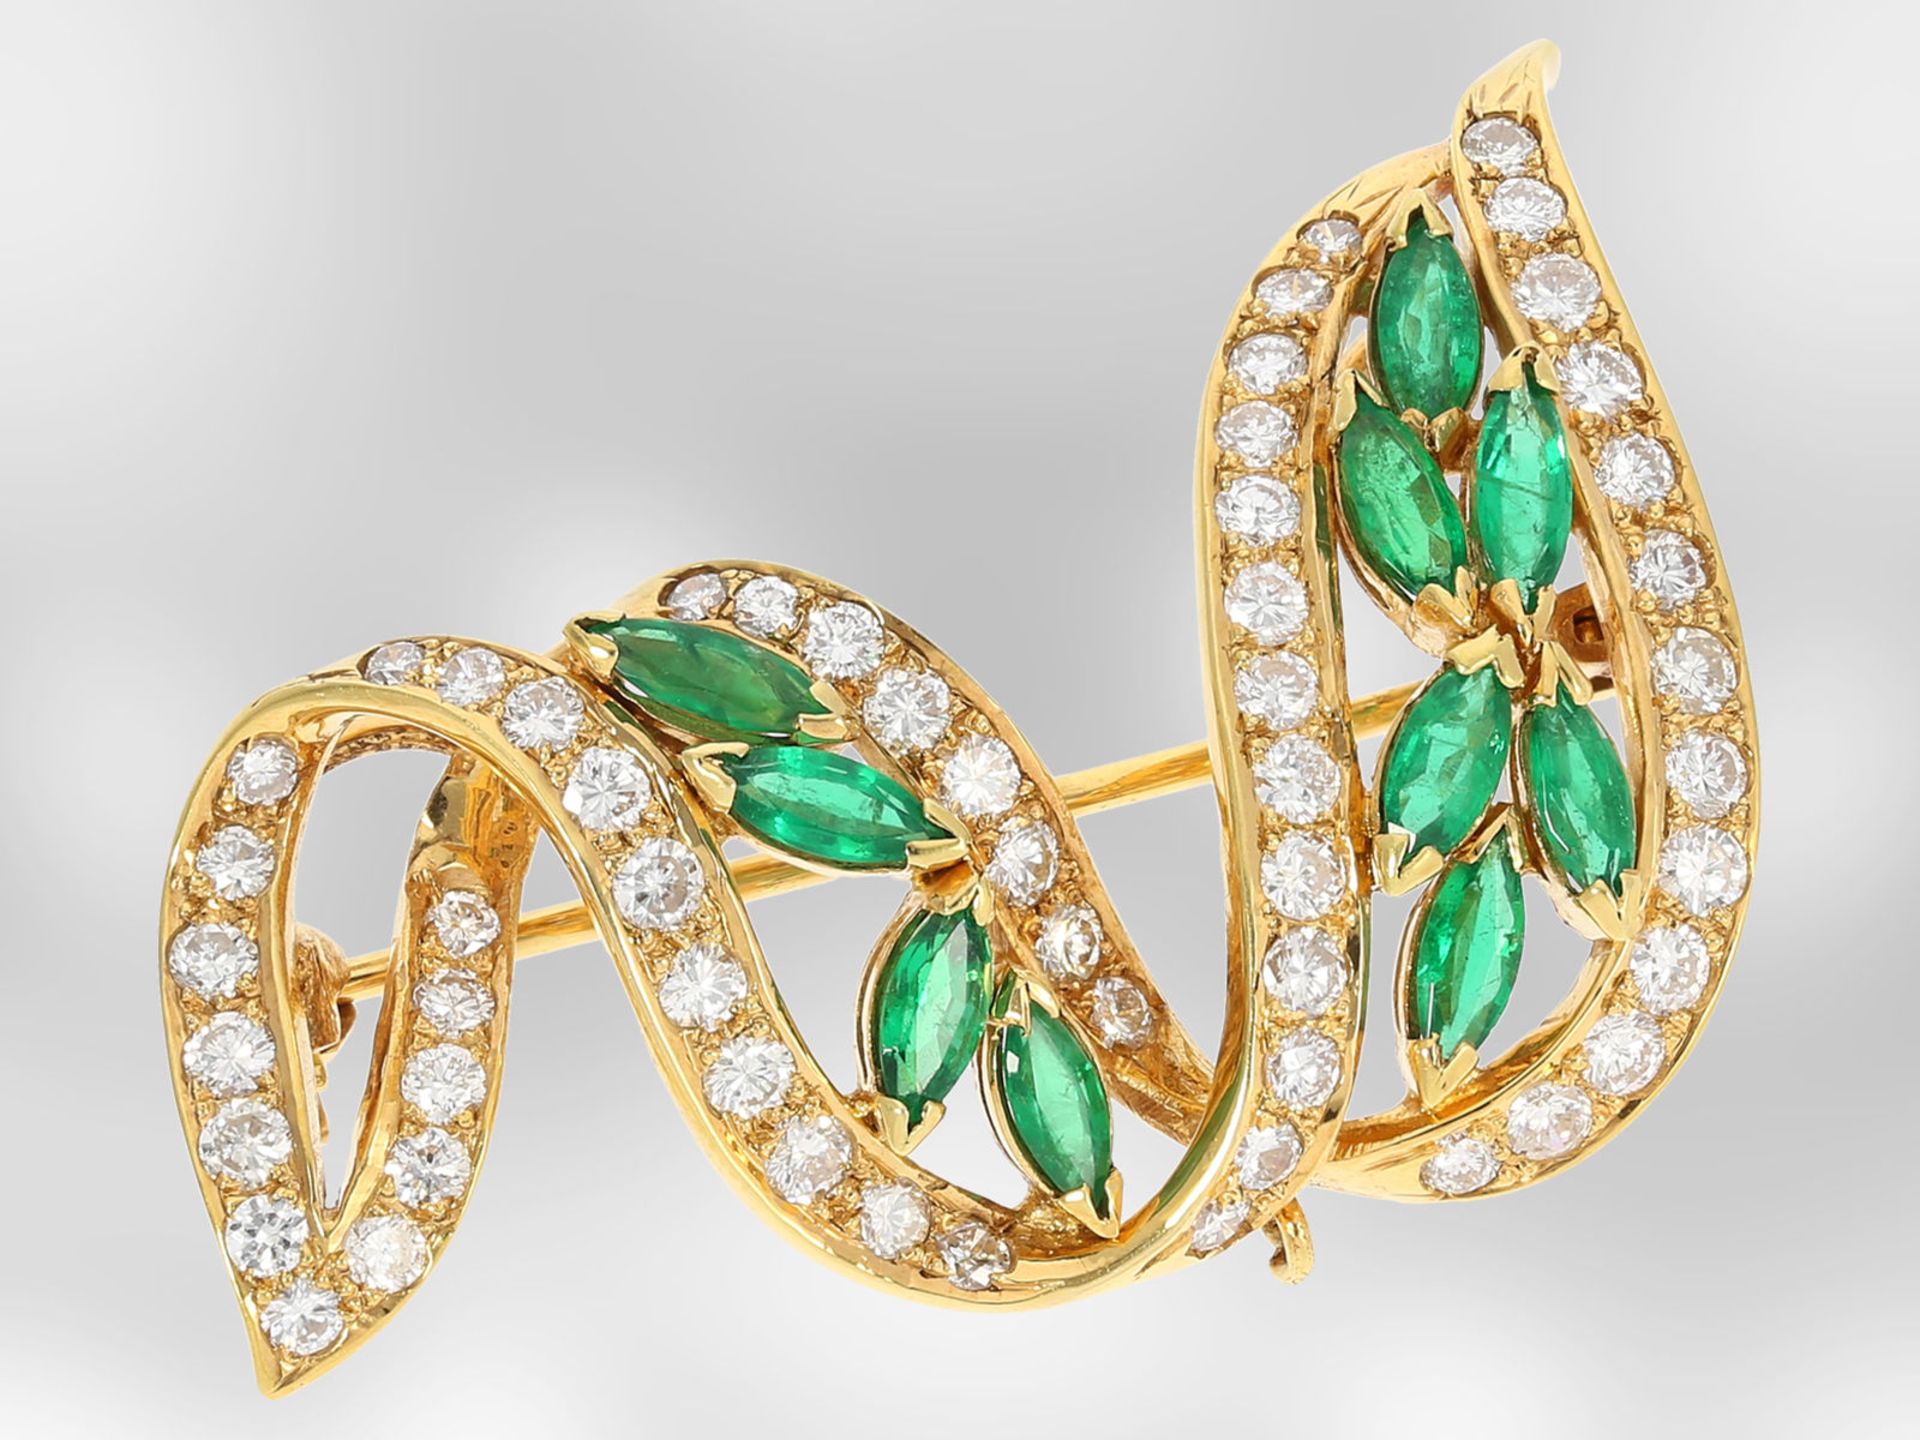 Brosche/Nadel: neuwertige Smaragd/Brillantbrosche in dekorativem Design, Handarbeit aus 18K Gold,